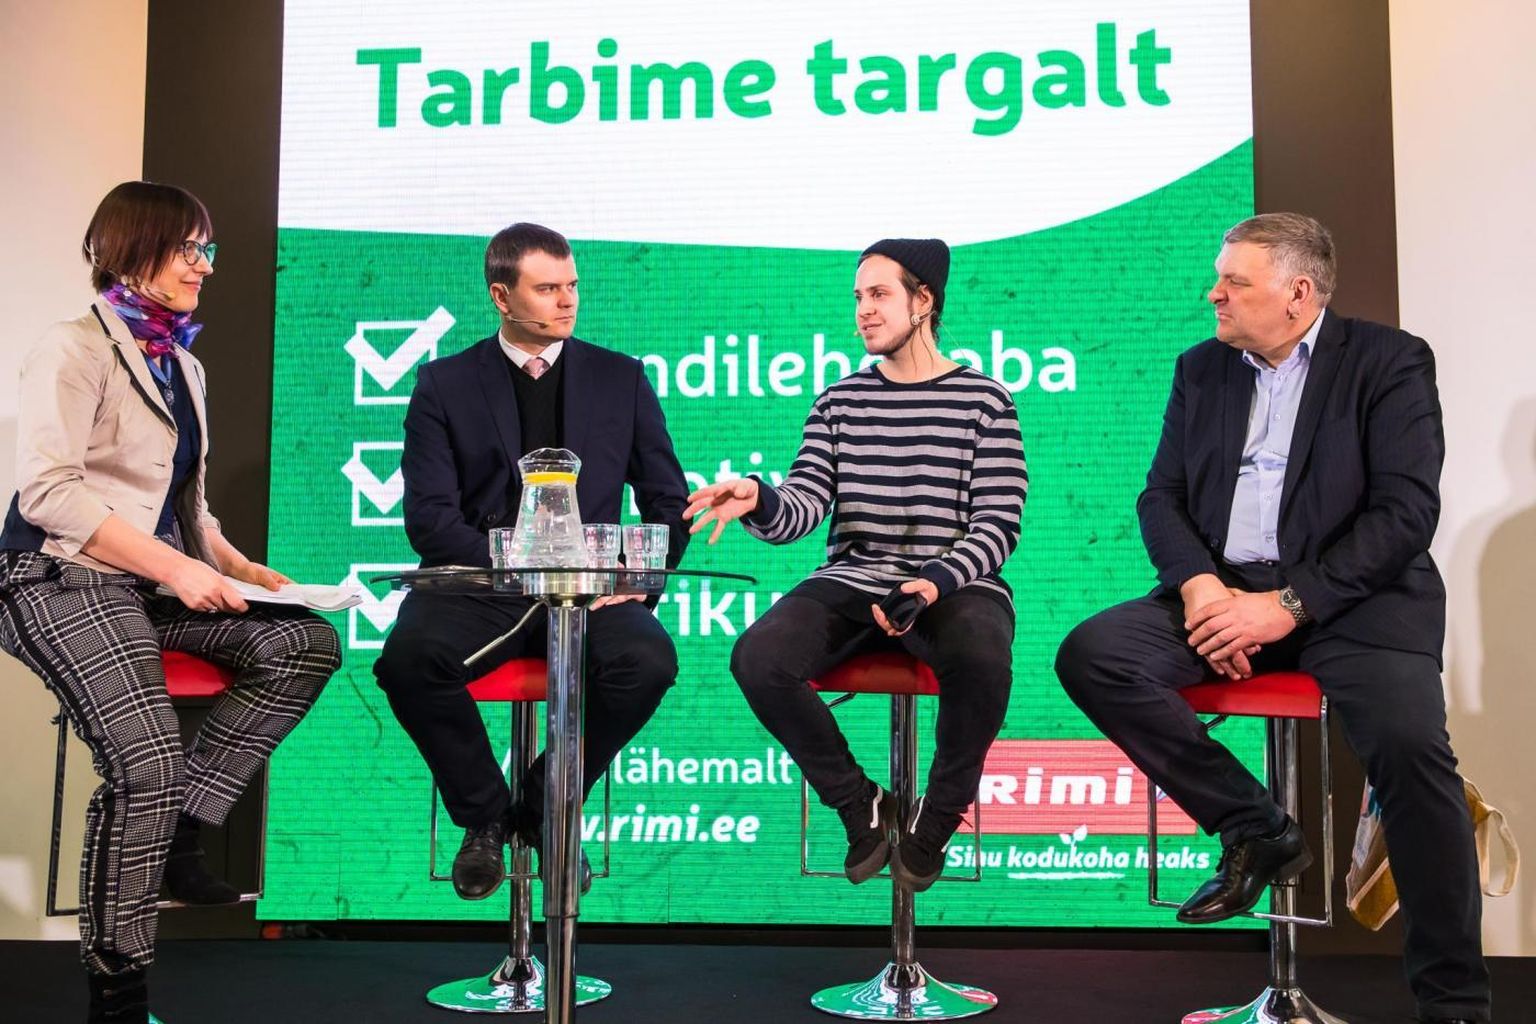 Vestluses osalesid Marko Pomerants, Madis Kallas ning Mick Pedaja. Modereeris „Teeme ära“ liikumise ja Killerkoti kampaania eestvedaja Anneli Ohvril.